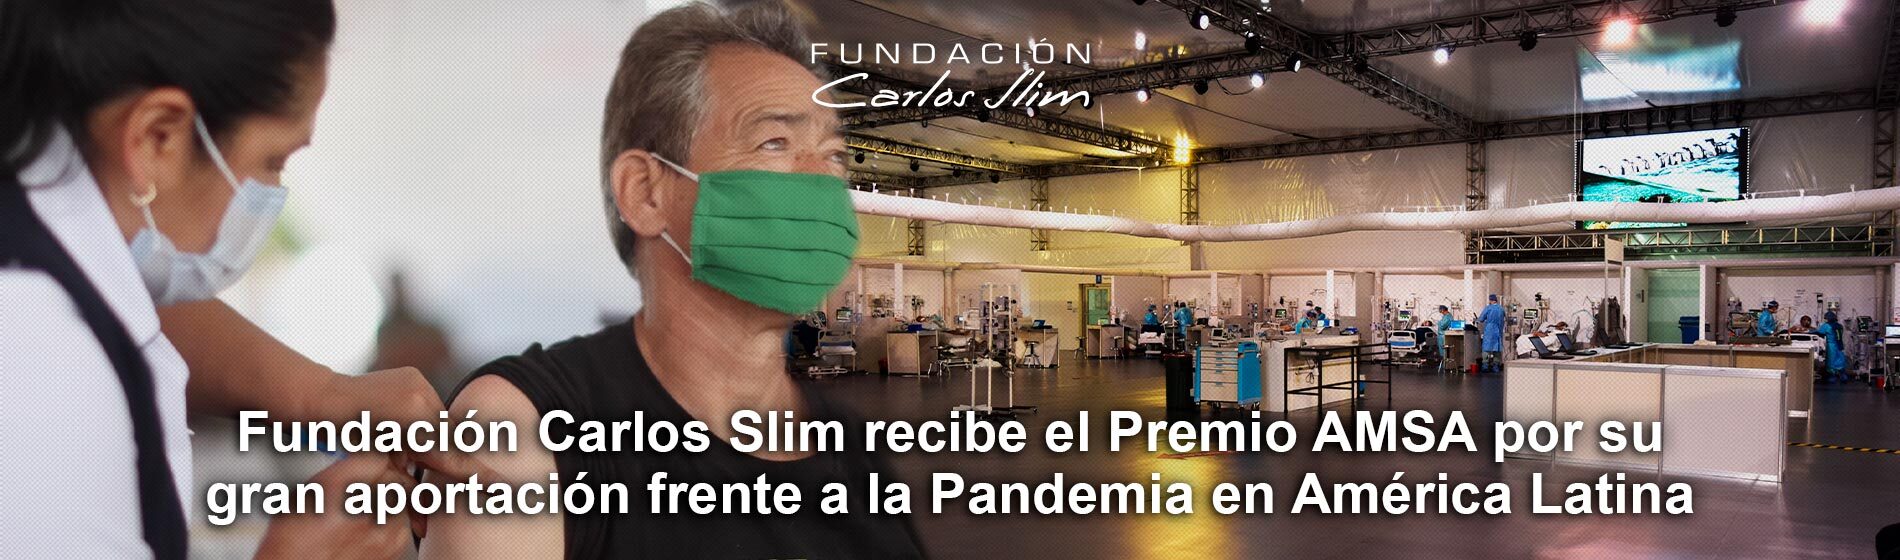 Inicio Fundación Carlos Slim Fundación Carlos Slim 9450